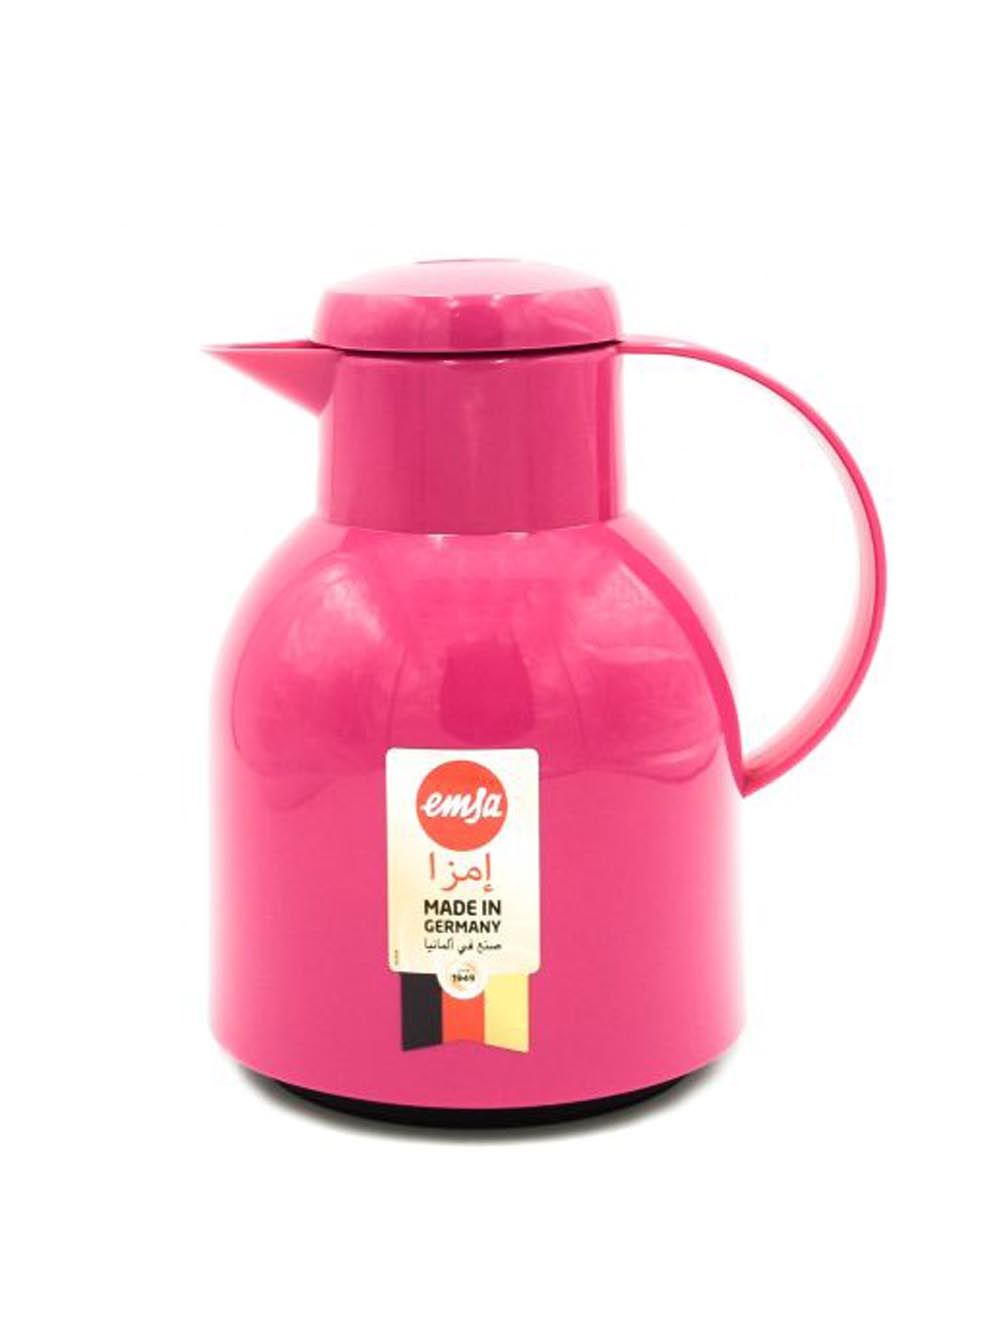 Emsa Samba Flask Jug - Pink 1L